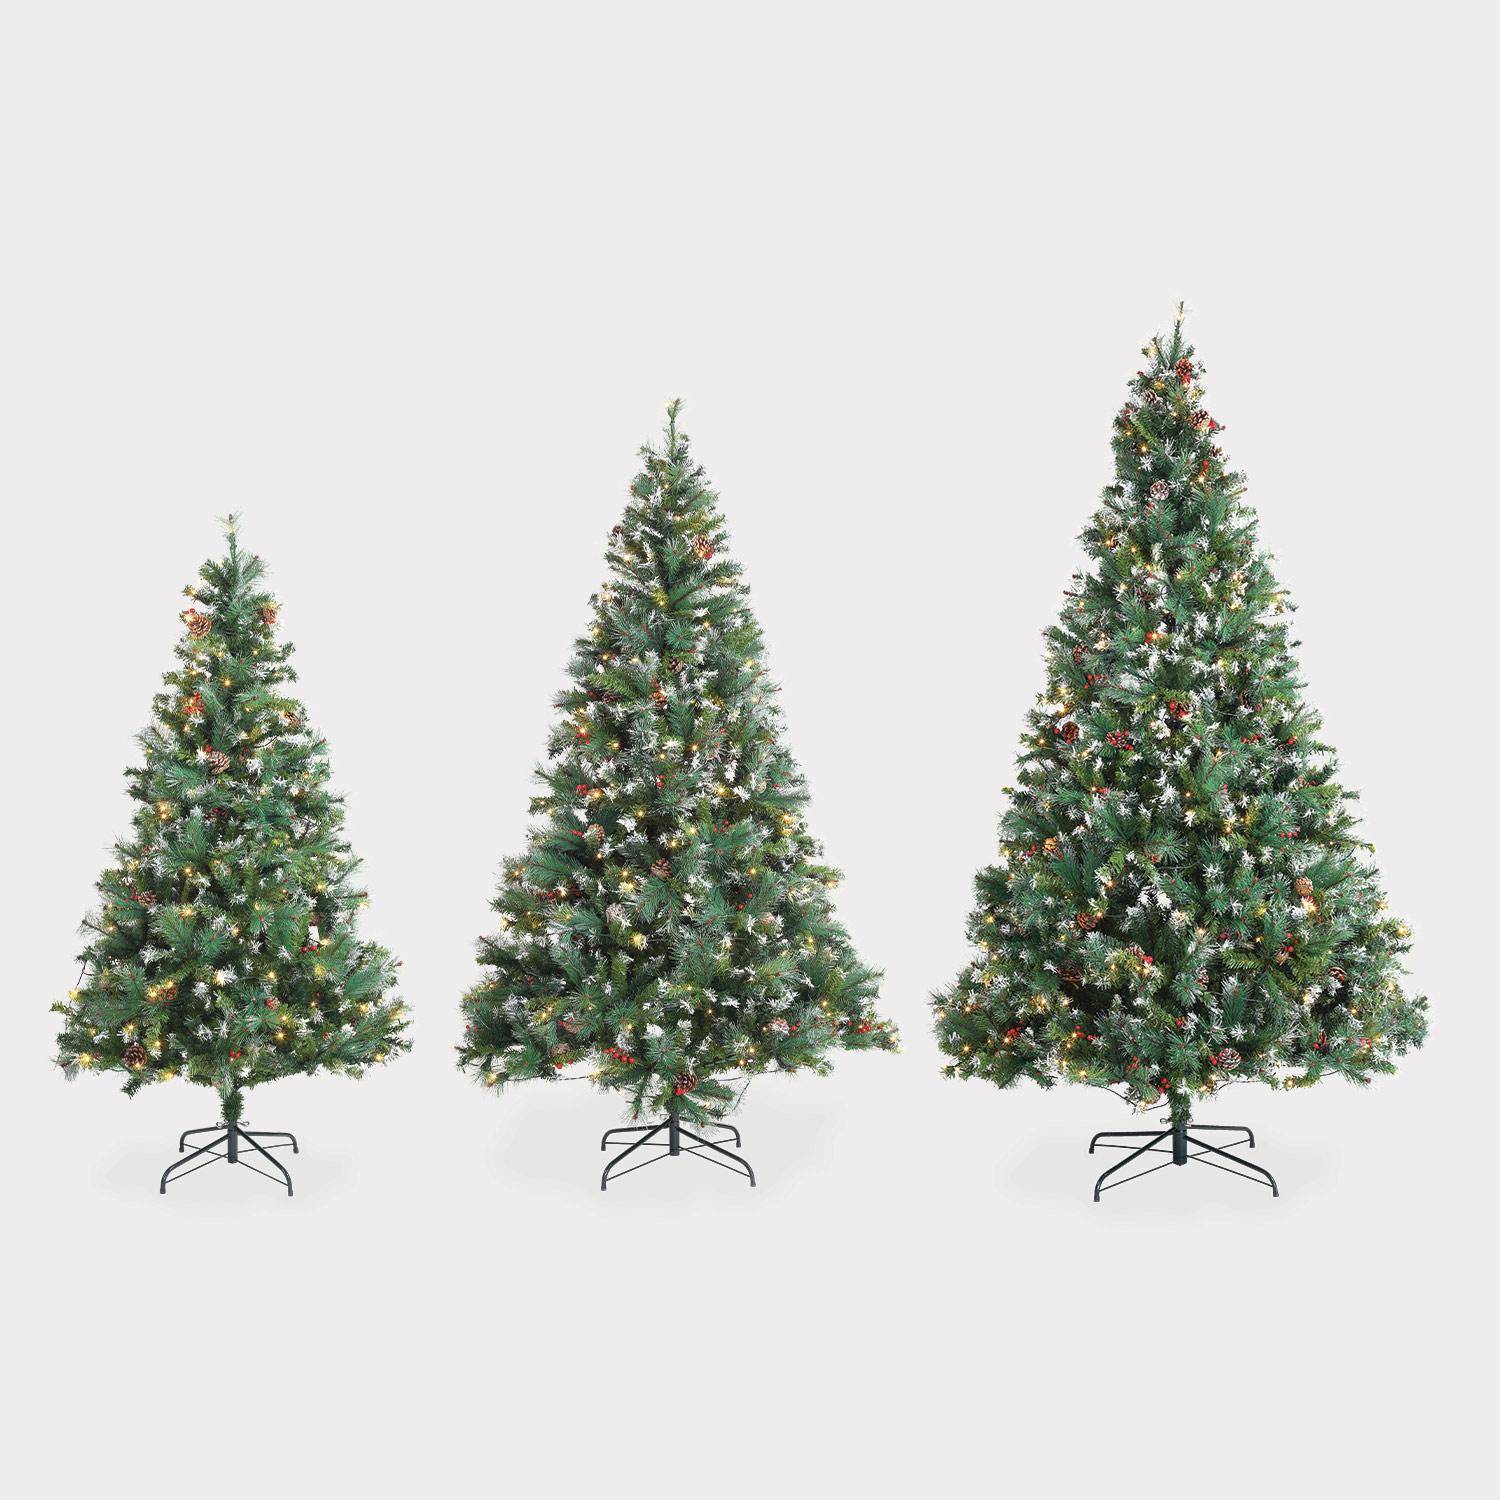 Albero di Natale artificiale deluxe da 210 cm con ghirlanda luminosa, decorazioni e supporto inclusi Photo4